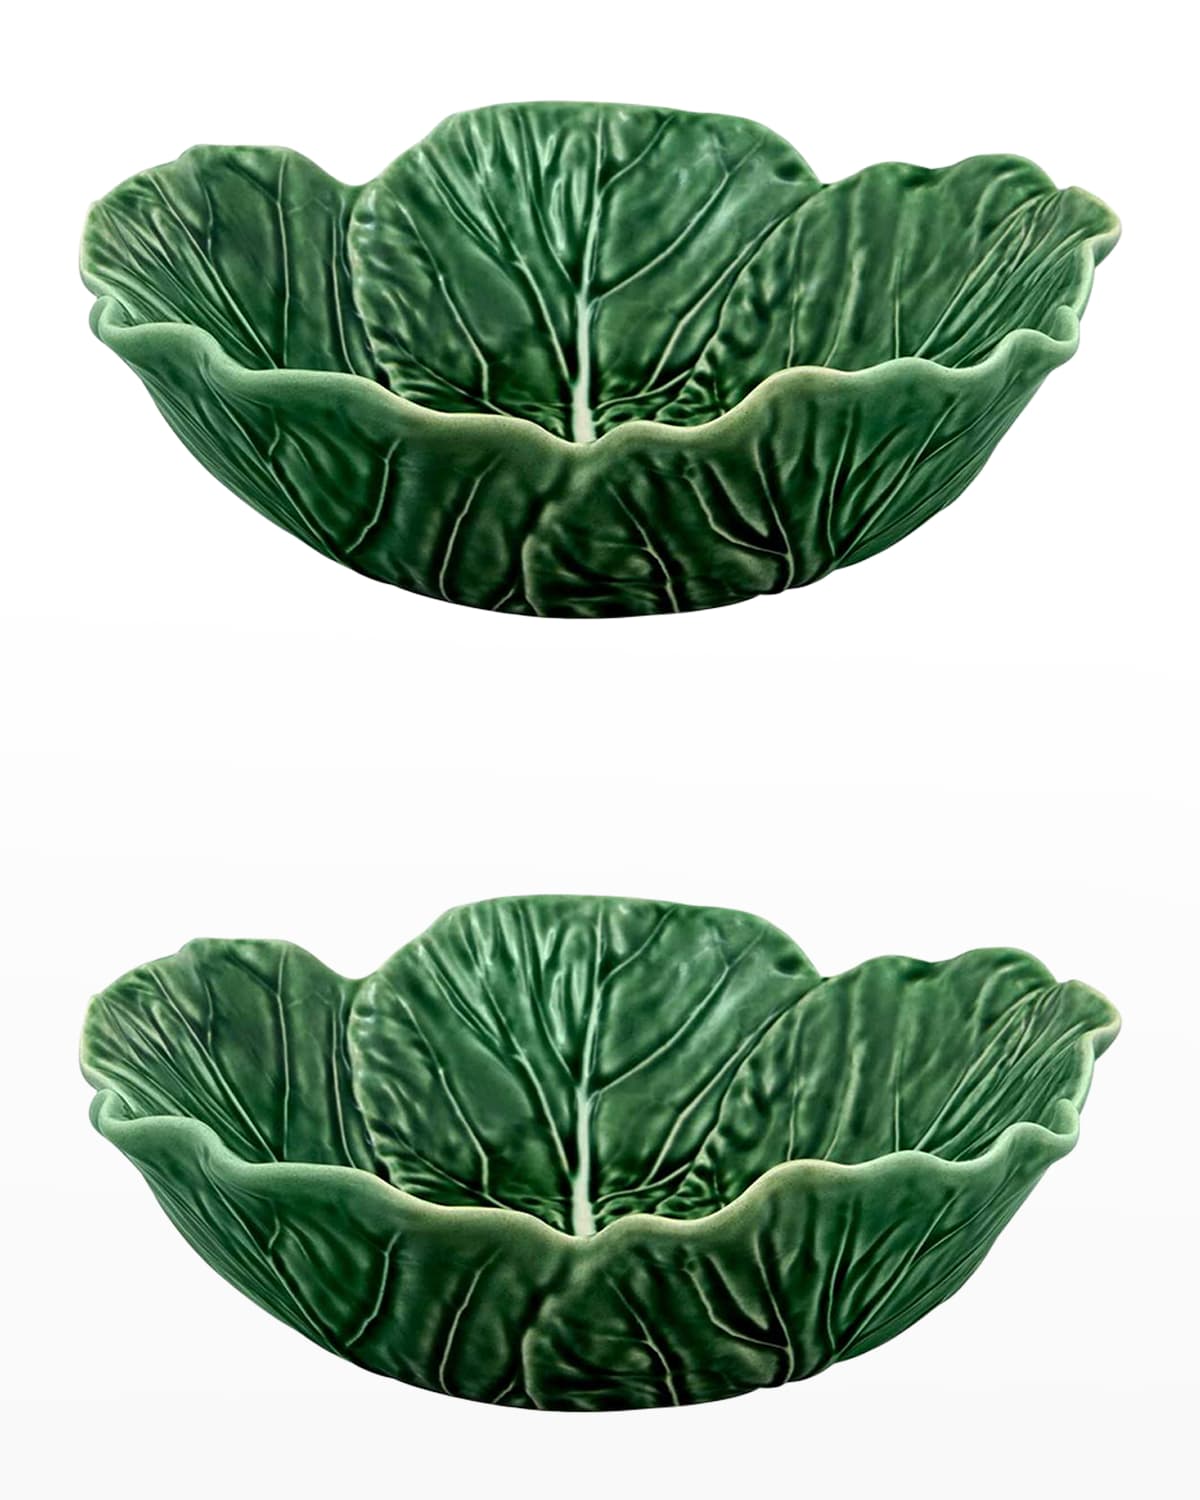 Cabbage 27 oz. Individual Salad Bowls, Green - Set of 2